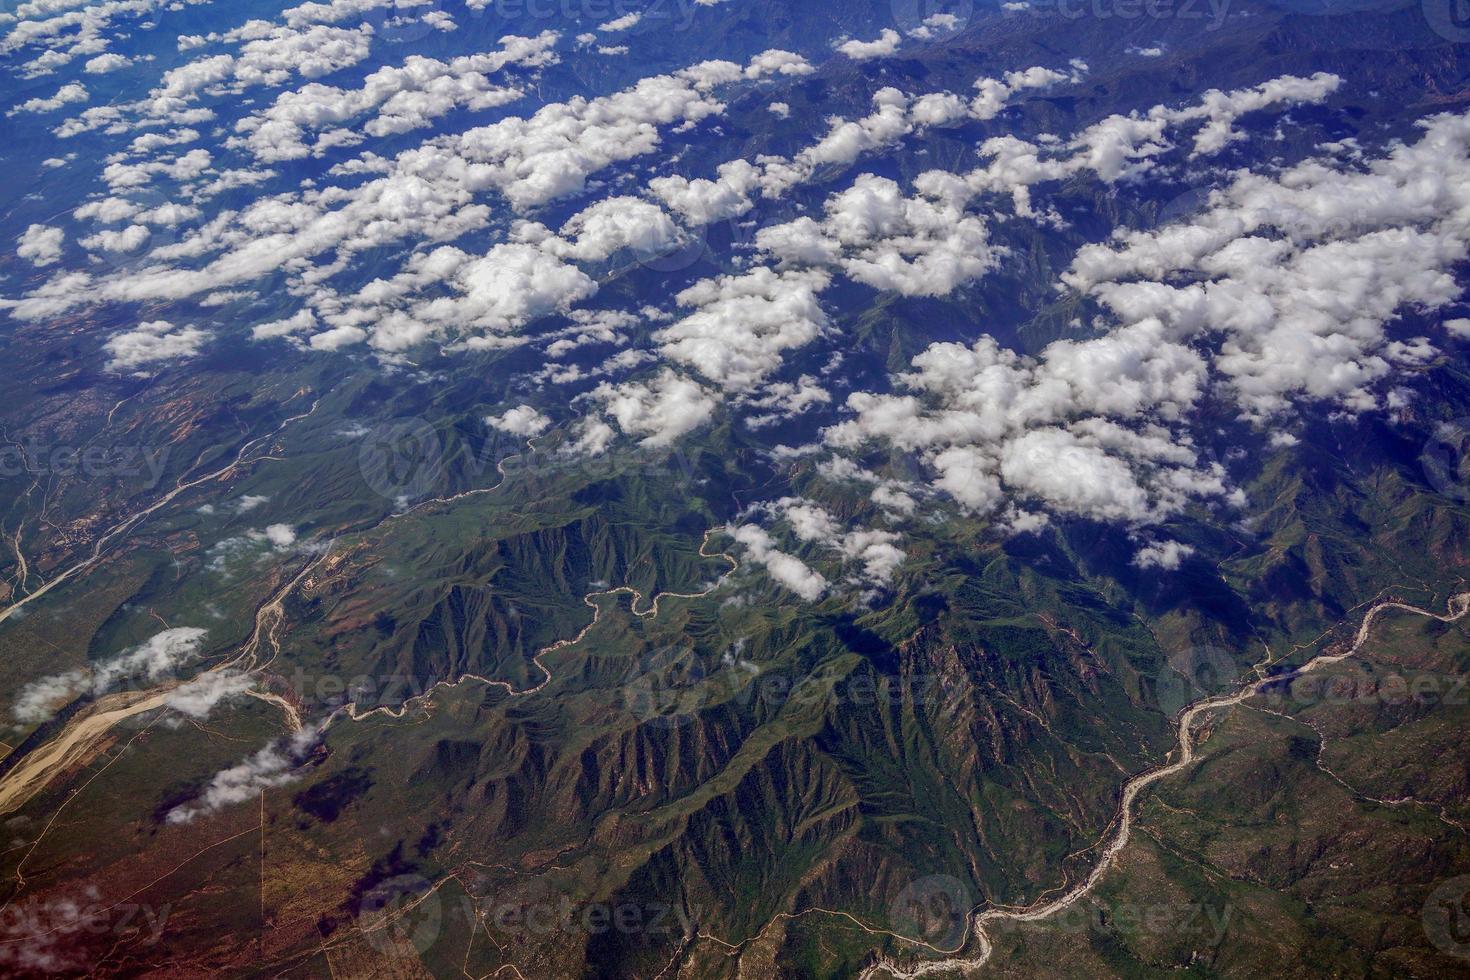 baja california sur sierra aerial view photo